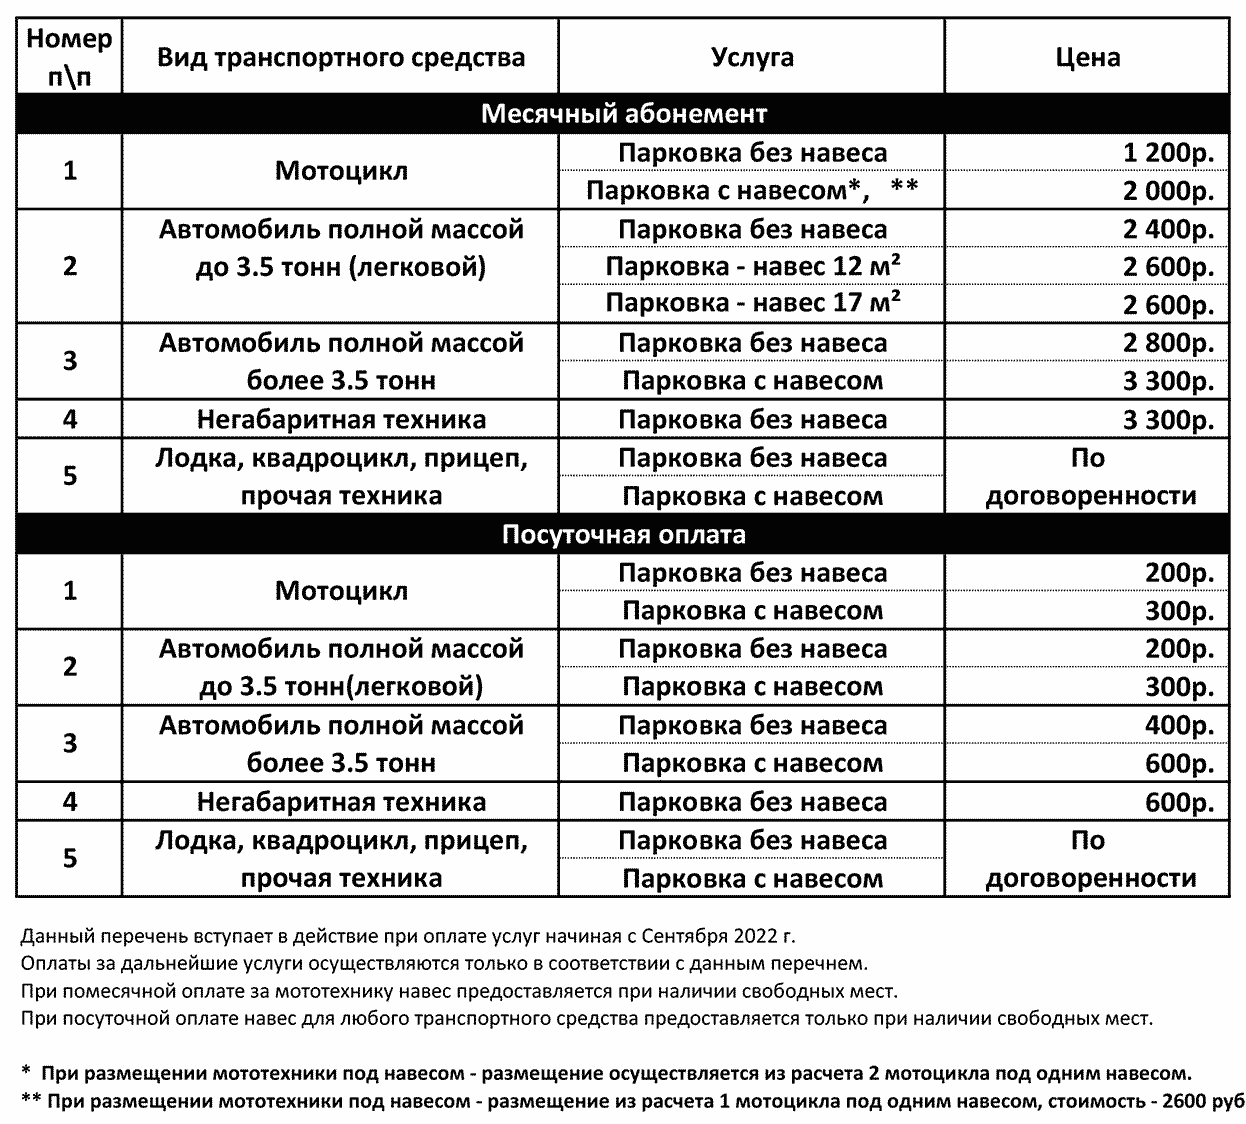 Стоимость парковки в Серпухове 2022